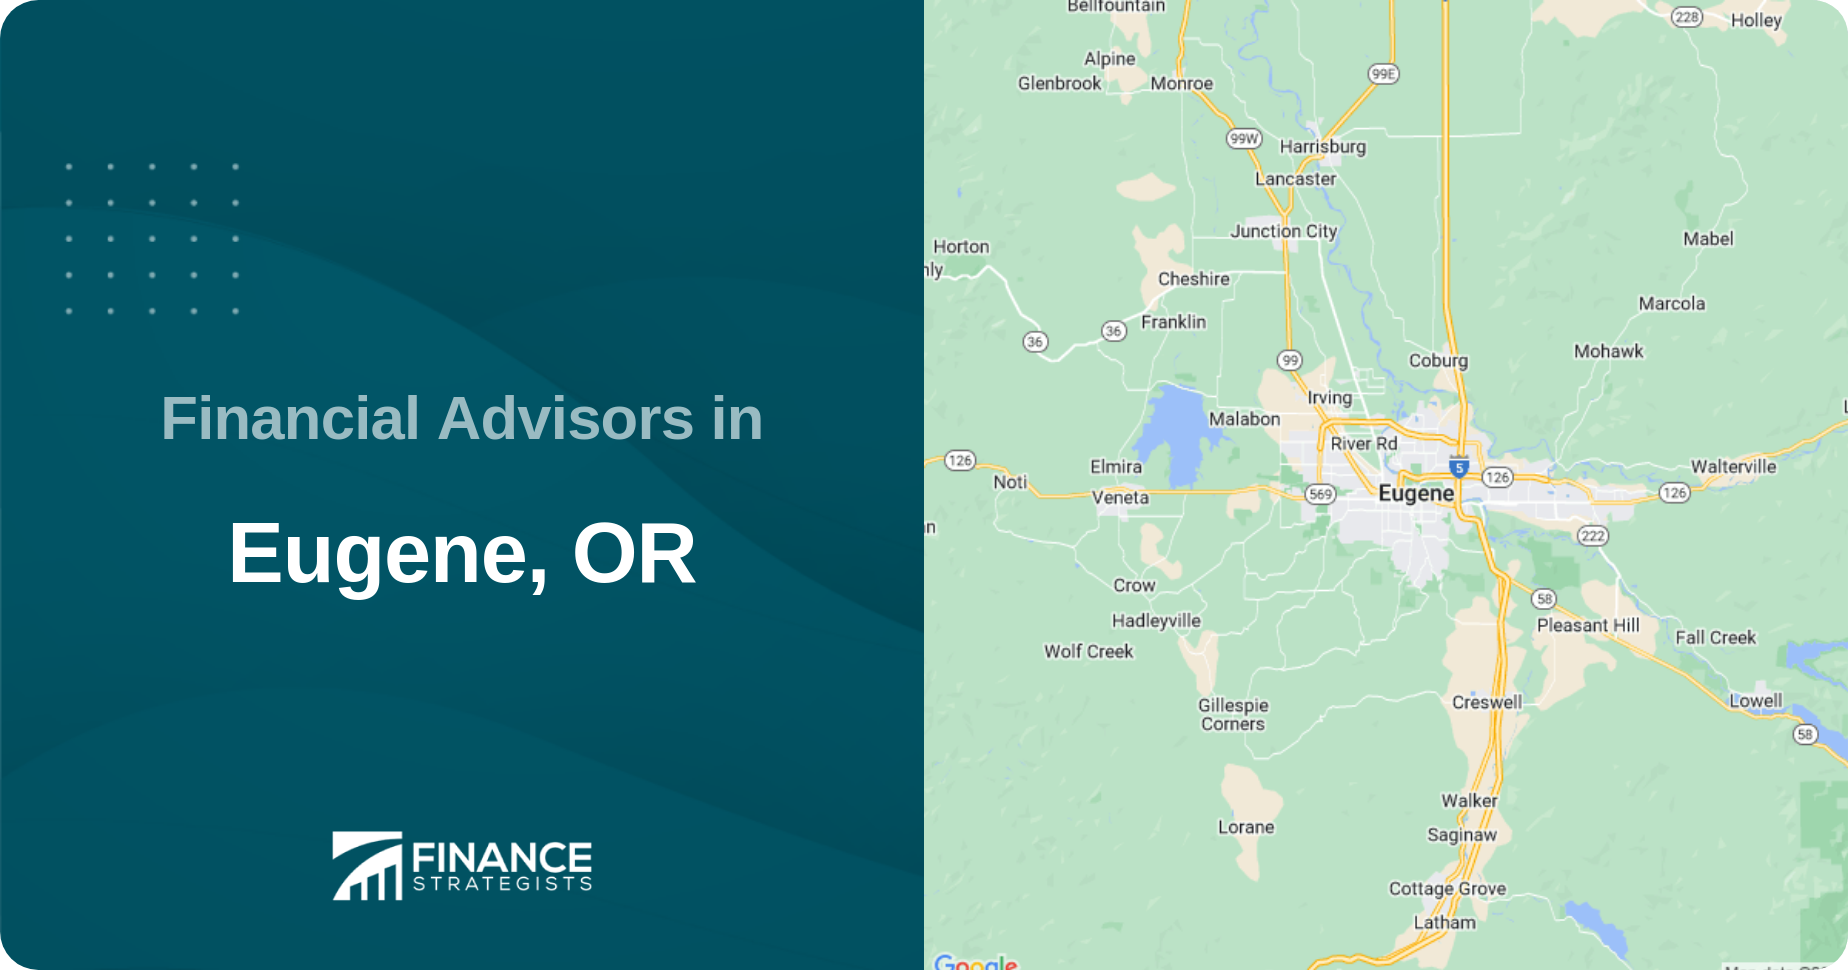 Financial Advisors in Eugene, OR